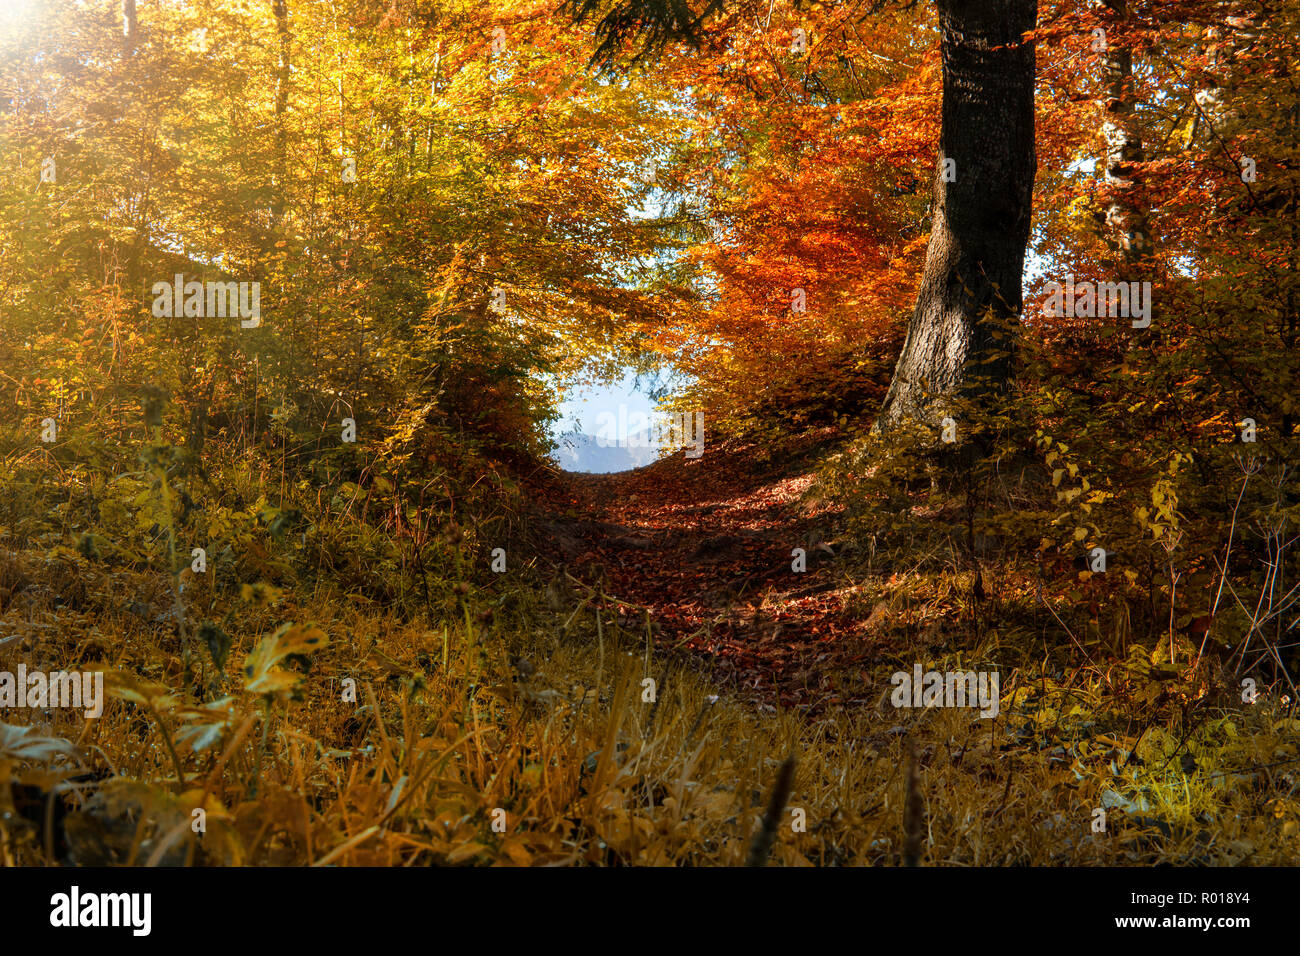 Sentier en forêt d'automne, le soleil qui brille à travers les arbres. Feuillage d'automne Banque D'Images